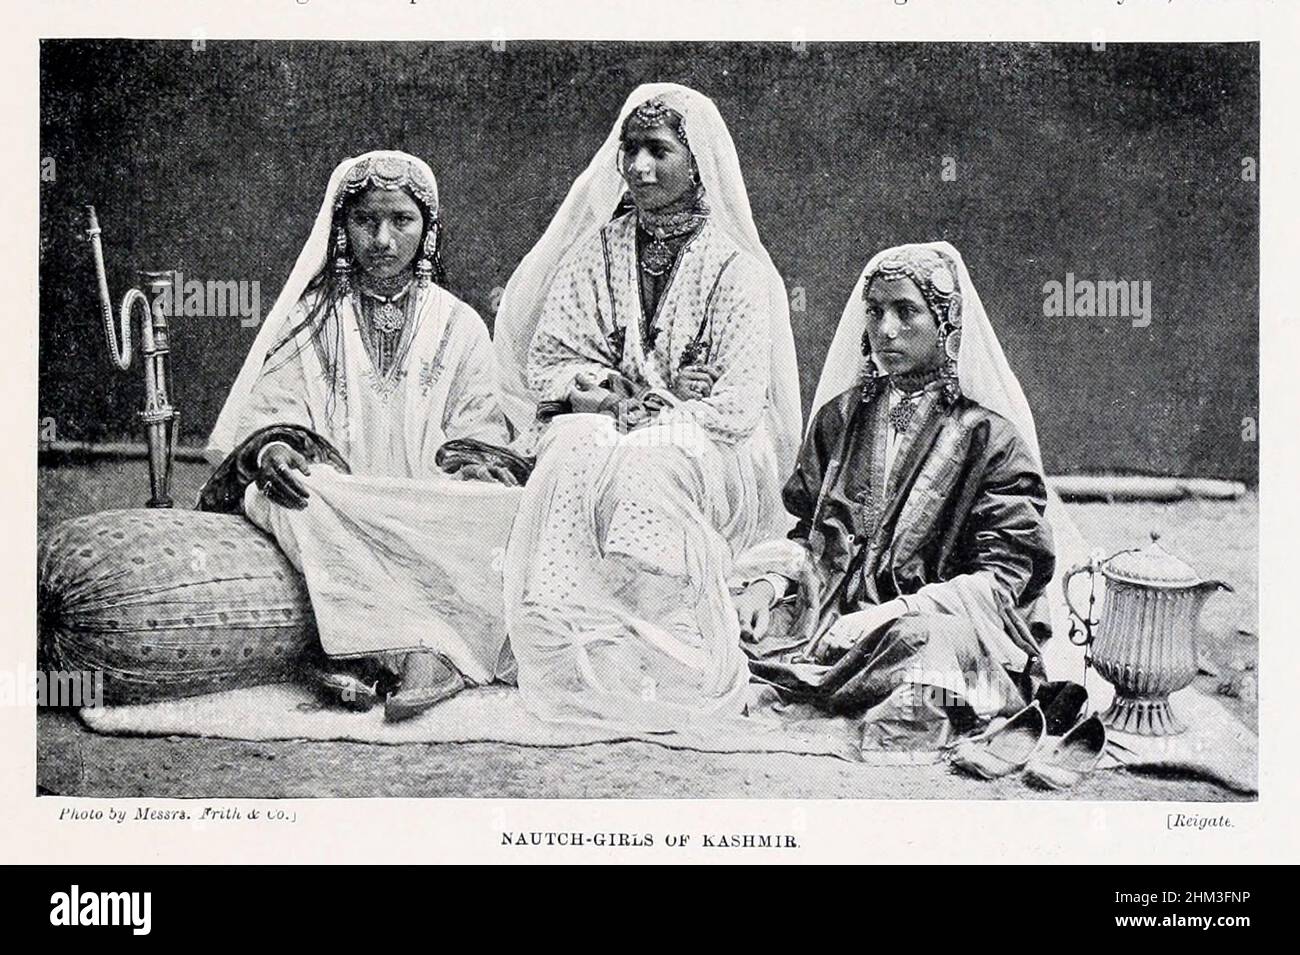 Nautch girls of Kashmir El nautch (que significa 'dance' o 'dancing') era un baile popular de la corte realizado por las muchachas (conocidas como 'nautch girls') en la India. La cultura del arte de la obra de arte de la nauta se elevó a la prominencia durante el período posterior del Imperio mogol, Y el gobierno de la Compañía del Este de la India.[2] Con el tiempo, la naucha viajó fuera de los confines de los Tribunales Imperiales de los Mughales, los palacios de los Nawabs y los estados principescos, Y los echelones superiores de los funcionarios del Raj británico, a los lugares de zamindars más pequeños. Del libro ' Las razas vivas de la humanidad ' Vol 1 de Henry Foto de stock